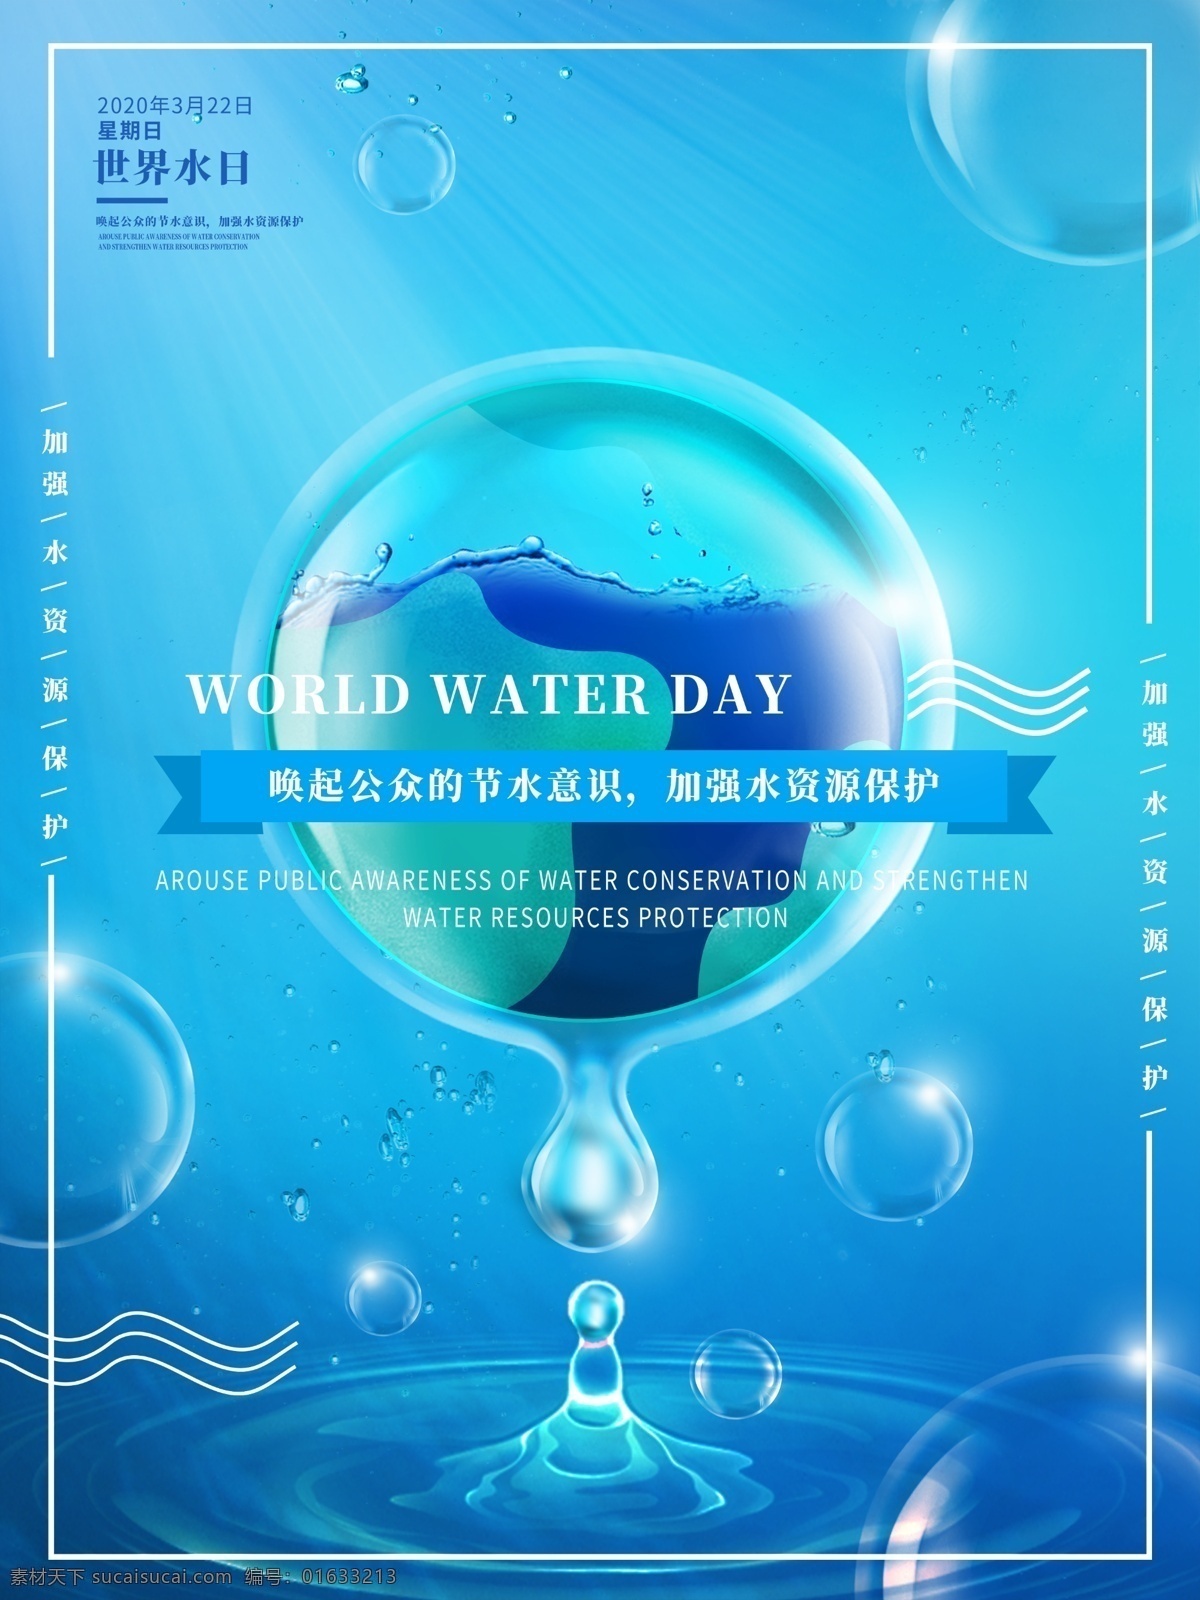 世界水日 地球水日 水滴蓝色 蓝色水滴 蓝色海报 水滴 水球 公益海报 公益展板 海报 分层